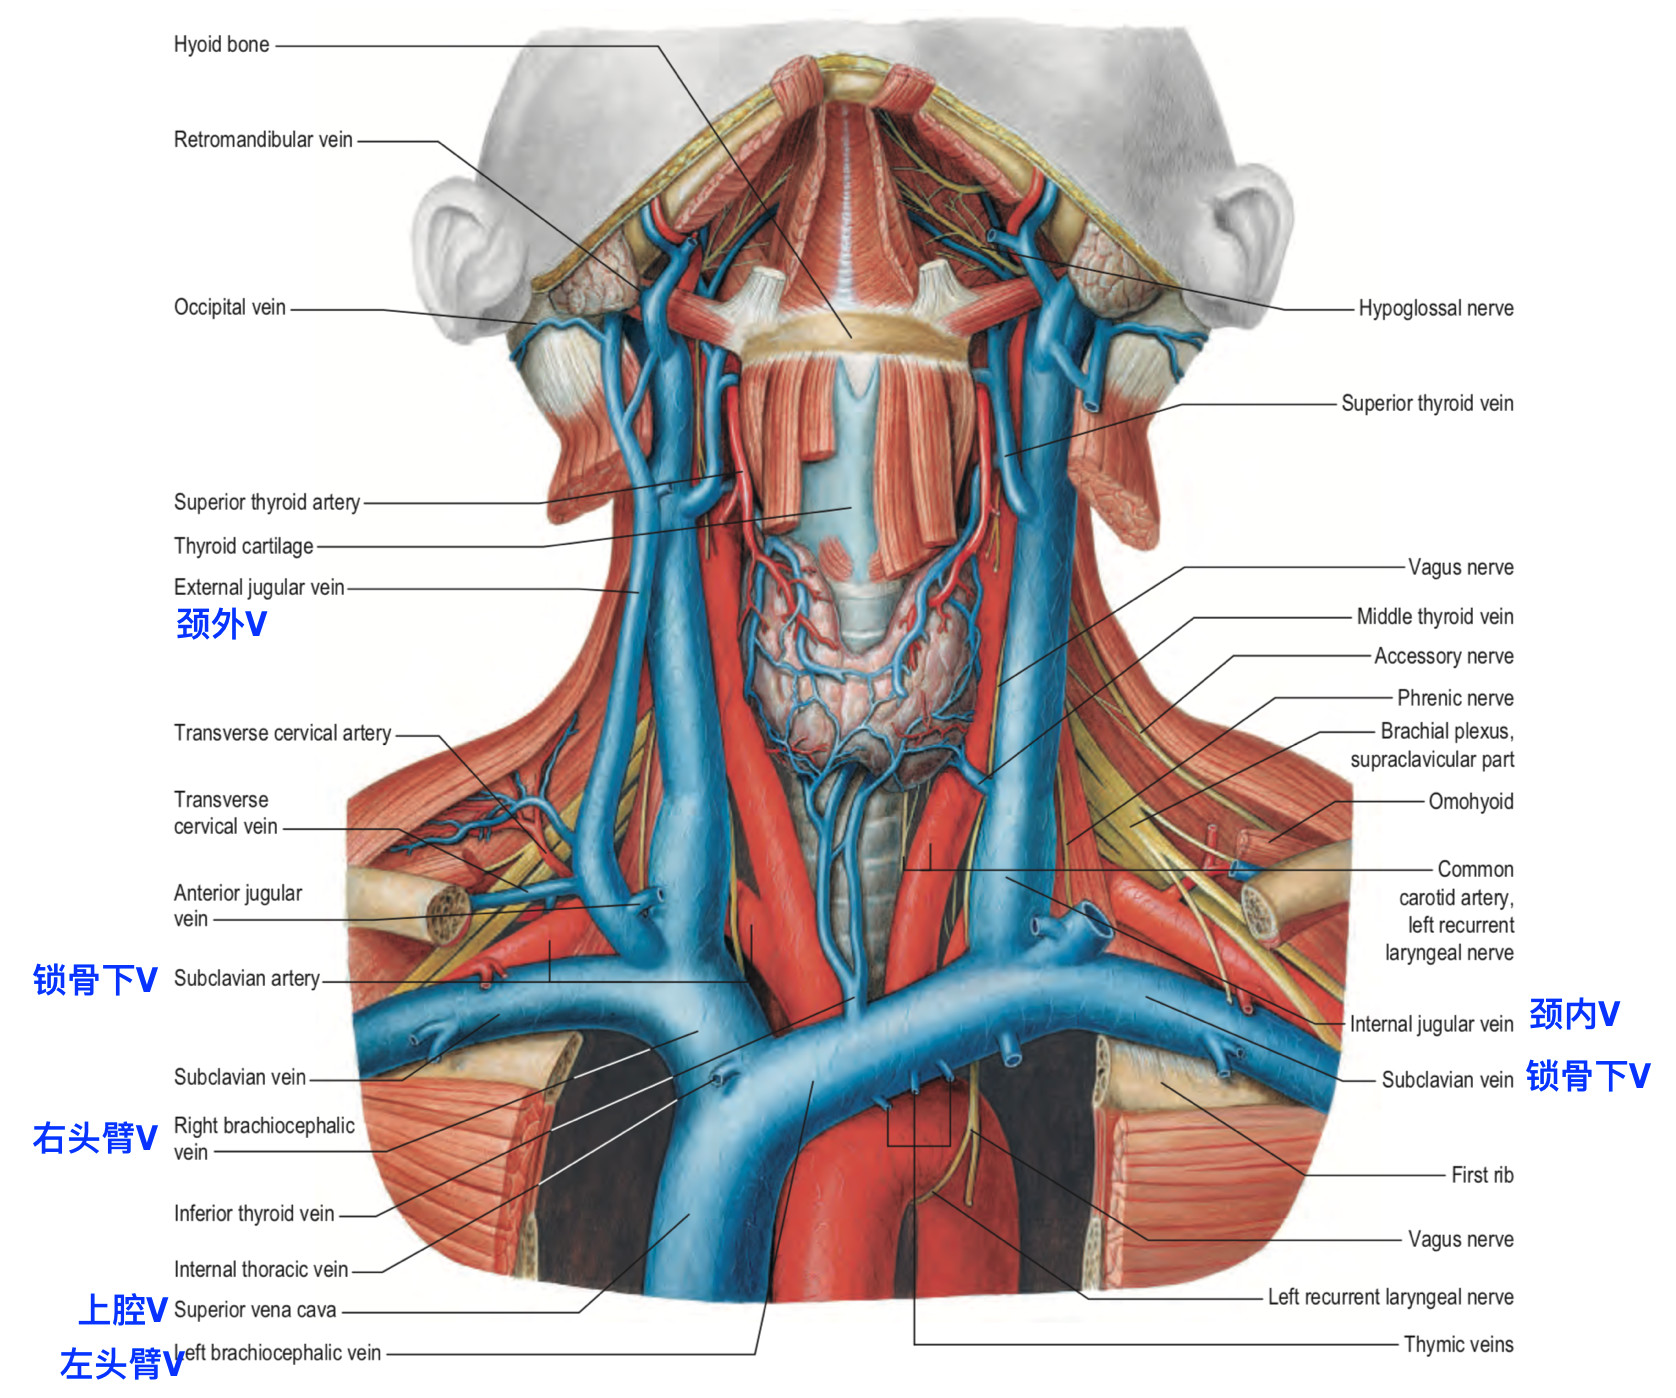 脑血管解剖学习笔记第25期:颈内静脉大体解剖